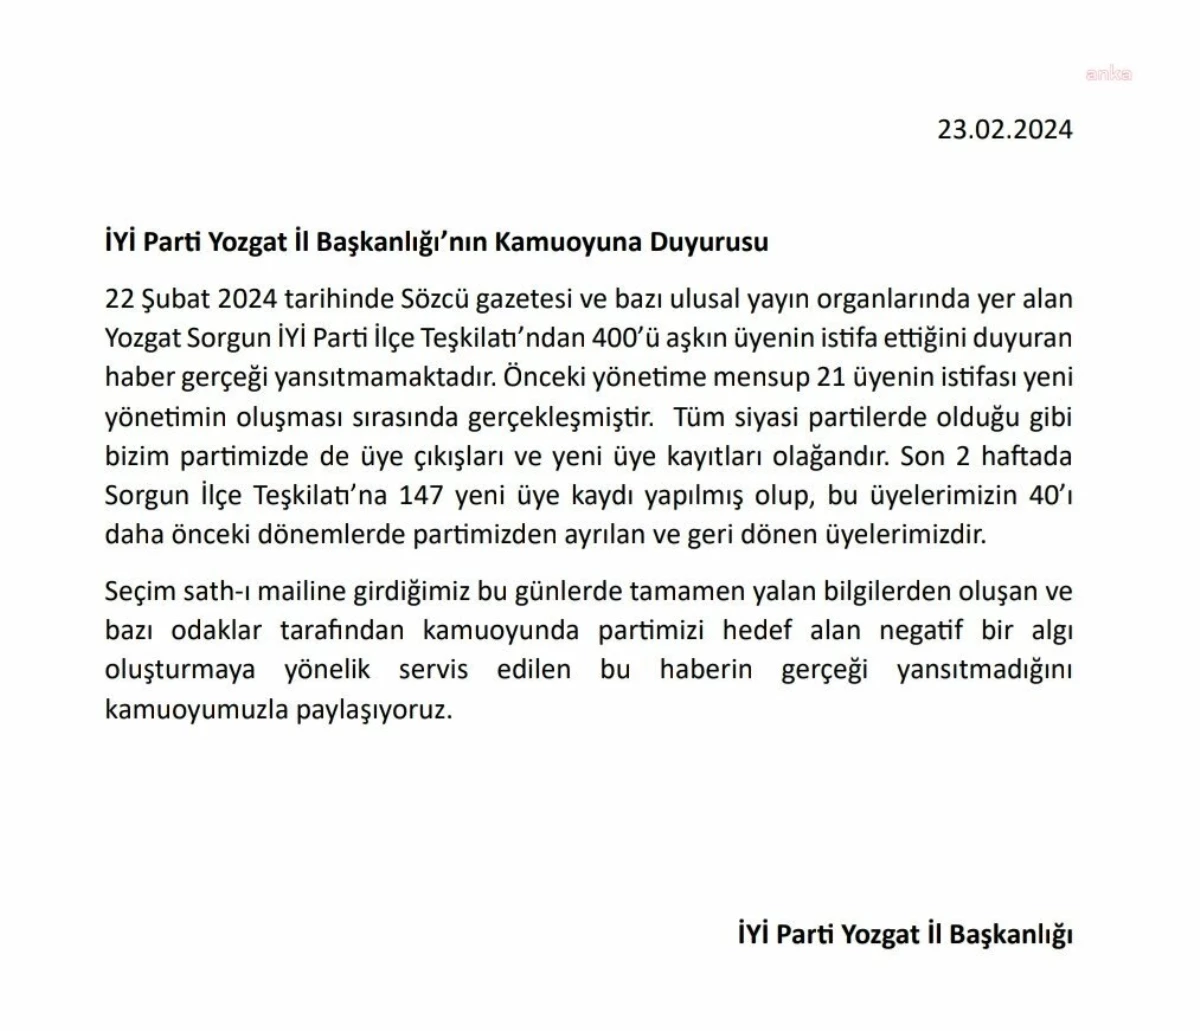 İYİ Parti Yozgat İl Başkanlığı, Sorgun İlçe Teşkilatı\'ndan İstifa Haberlerini Yalanladı